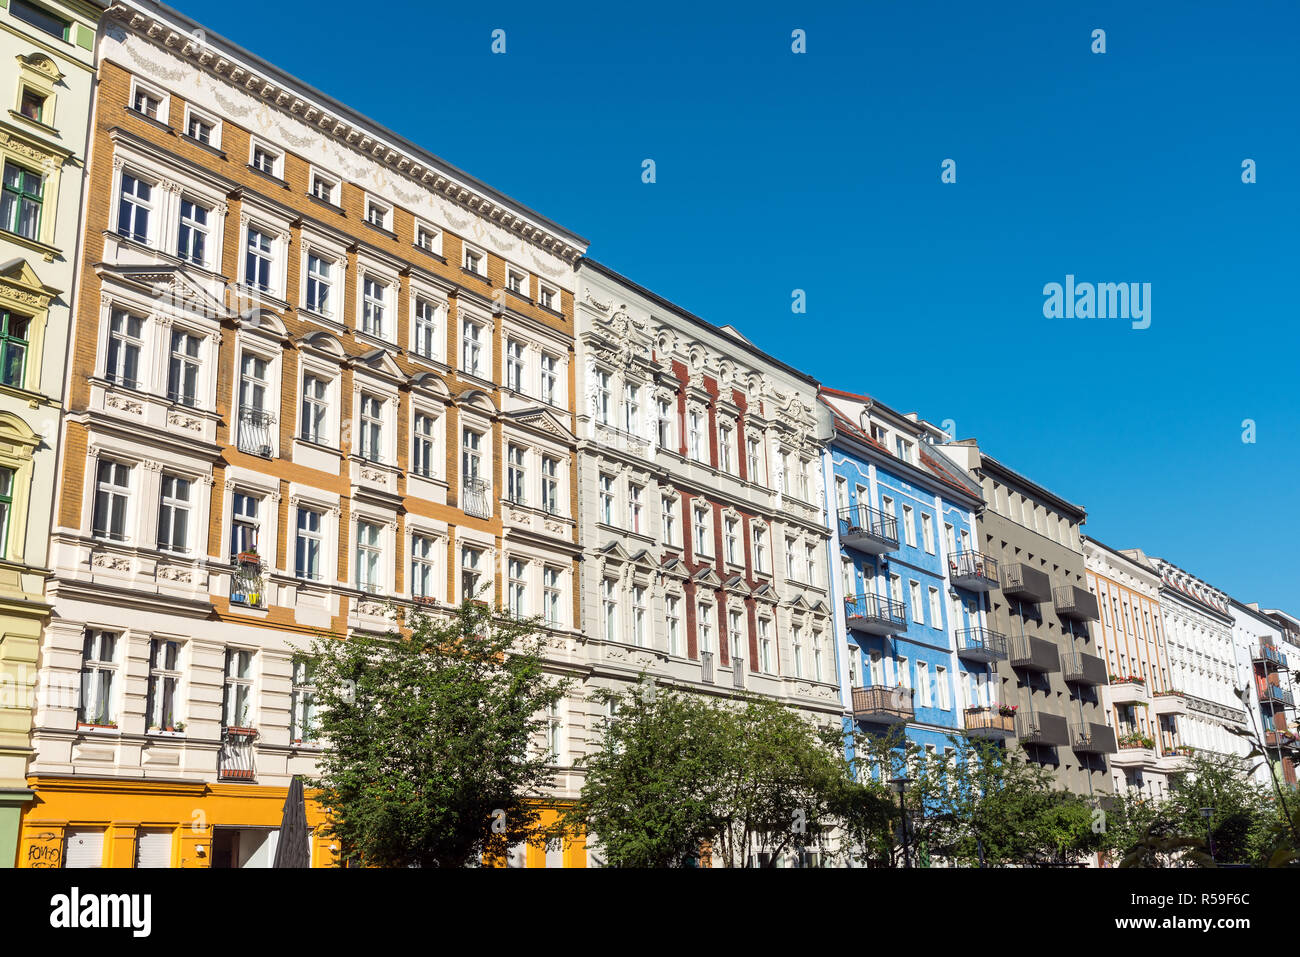 renovated old buildings in prenzlauer berg in berlin Stock Photo